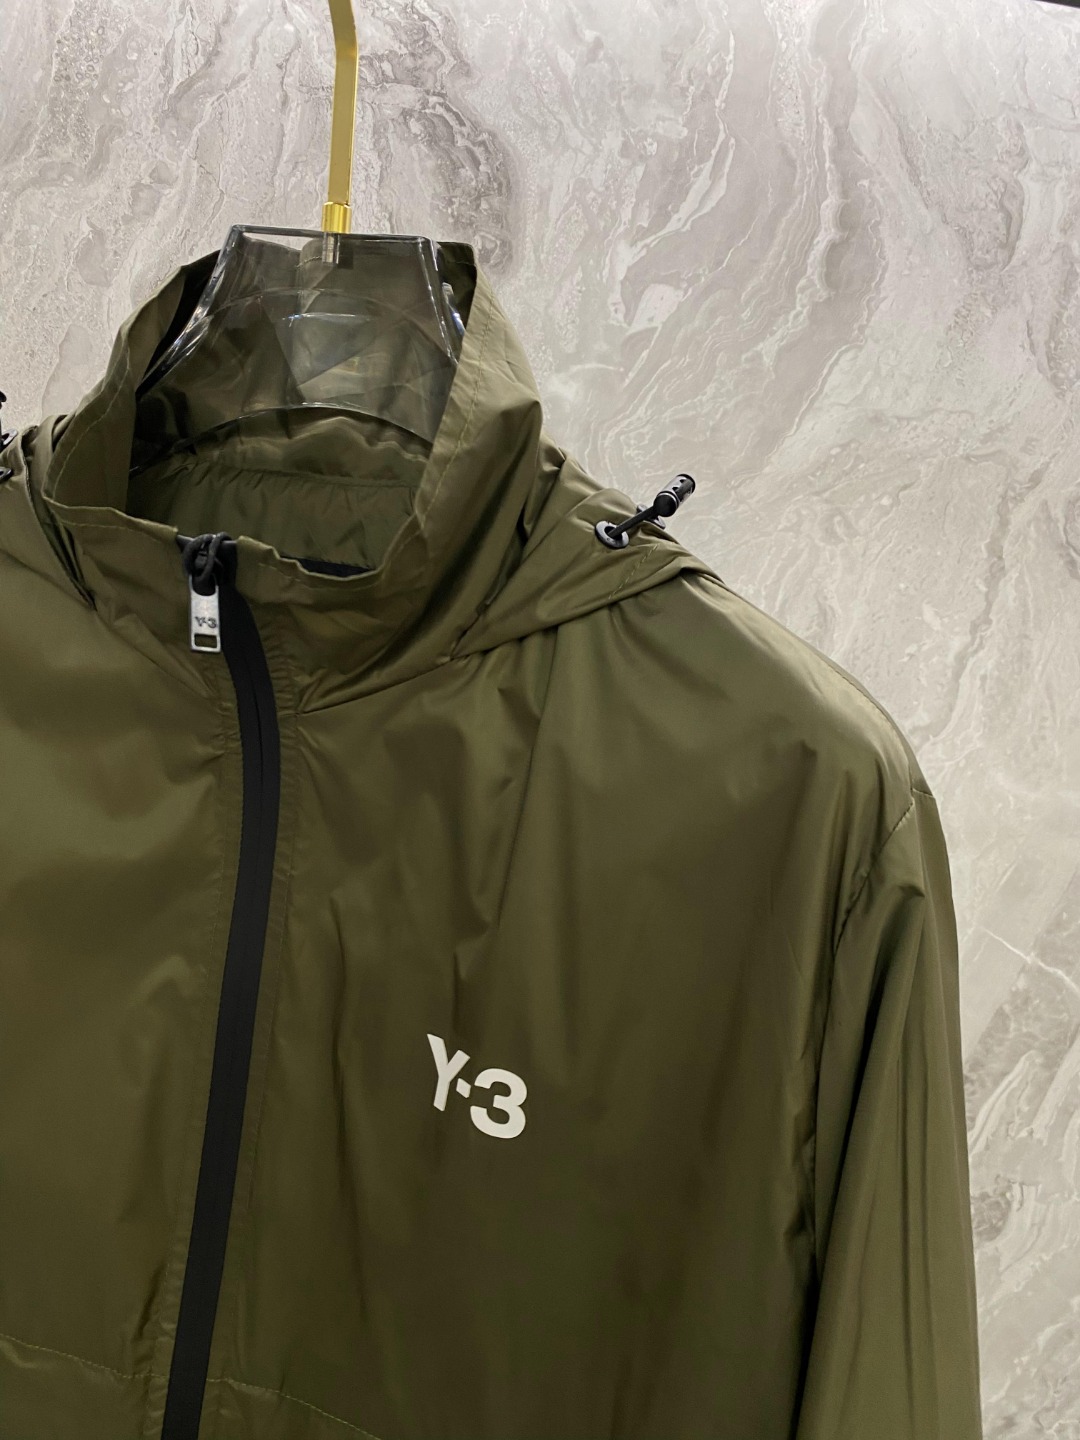 Y-3#24ss风衣系男装高端梭织外套高端精品系列男女同款贸易公司渠道订单官网专柜在售系列业内独家首发经